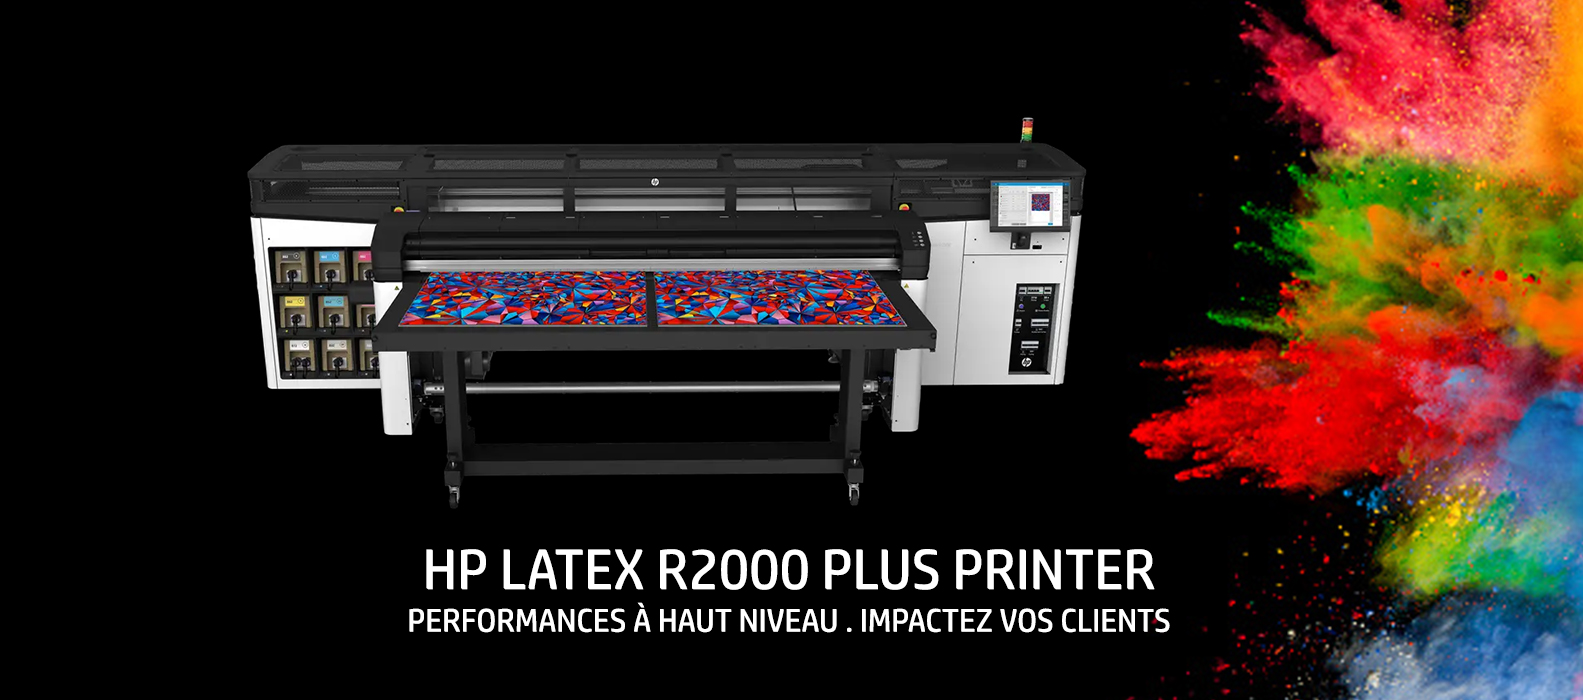 HP LATEX R2000 PLUS